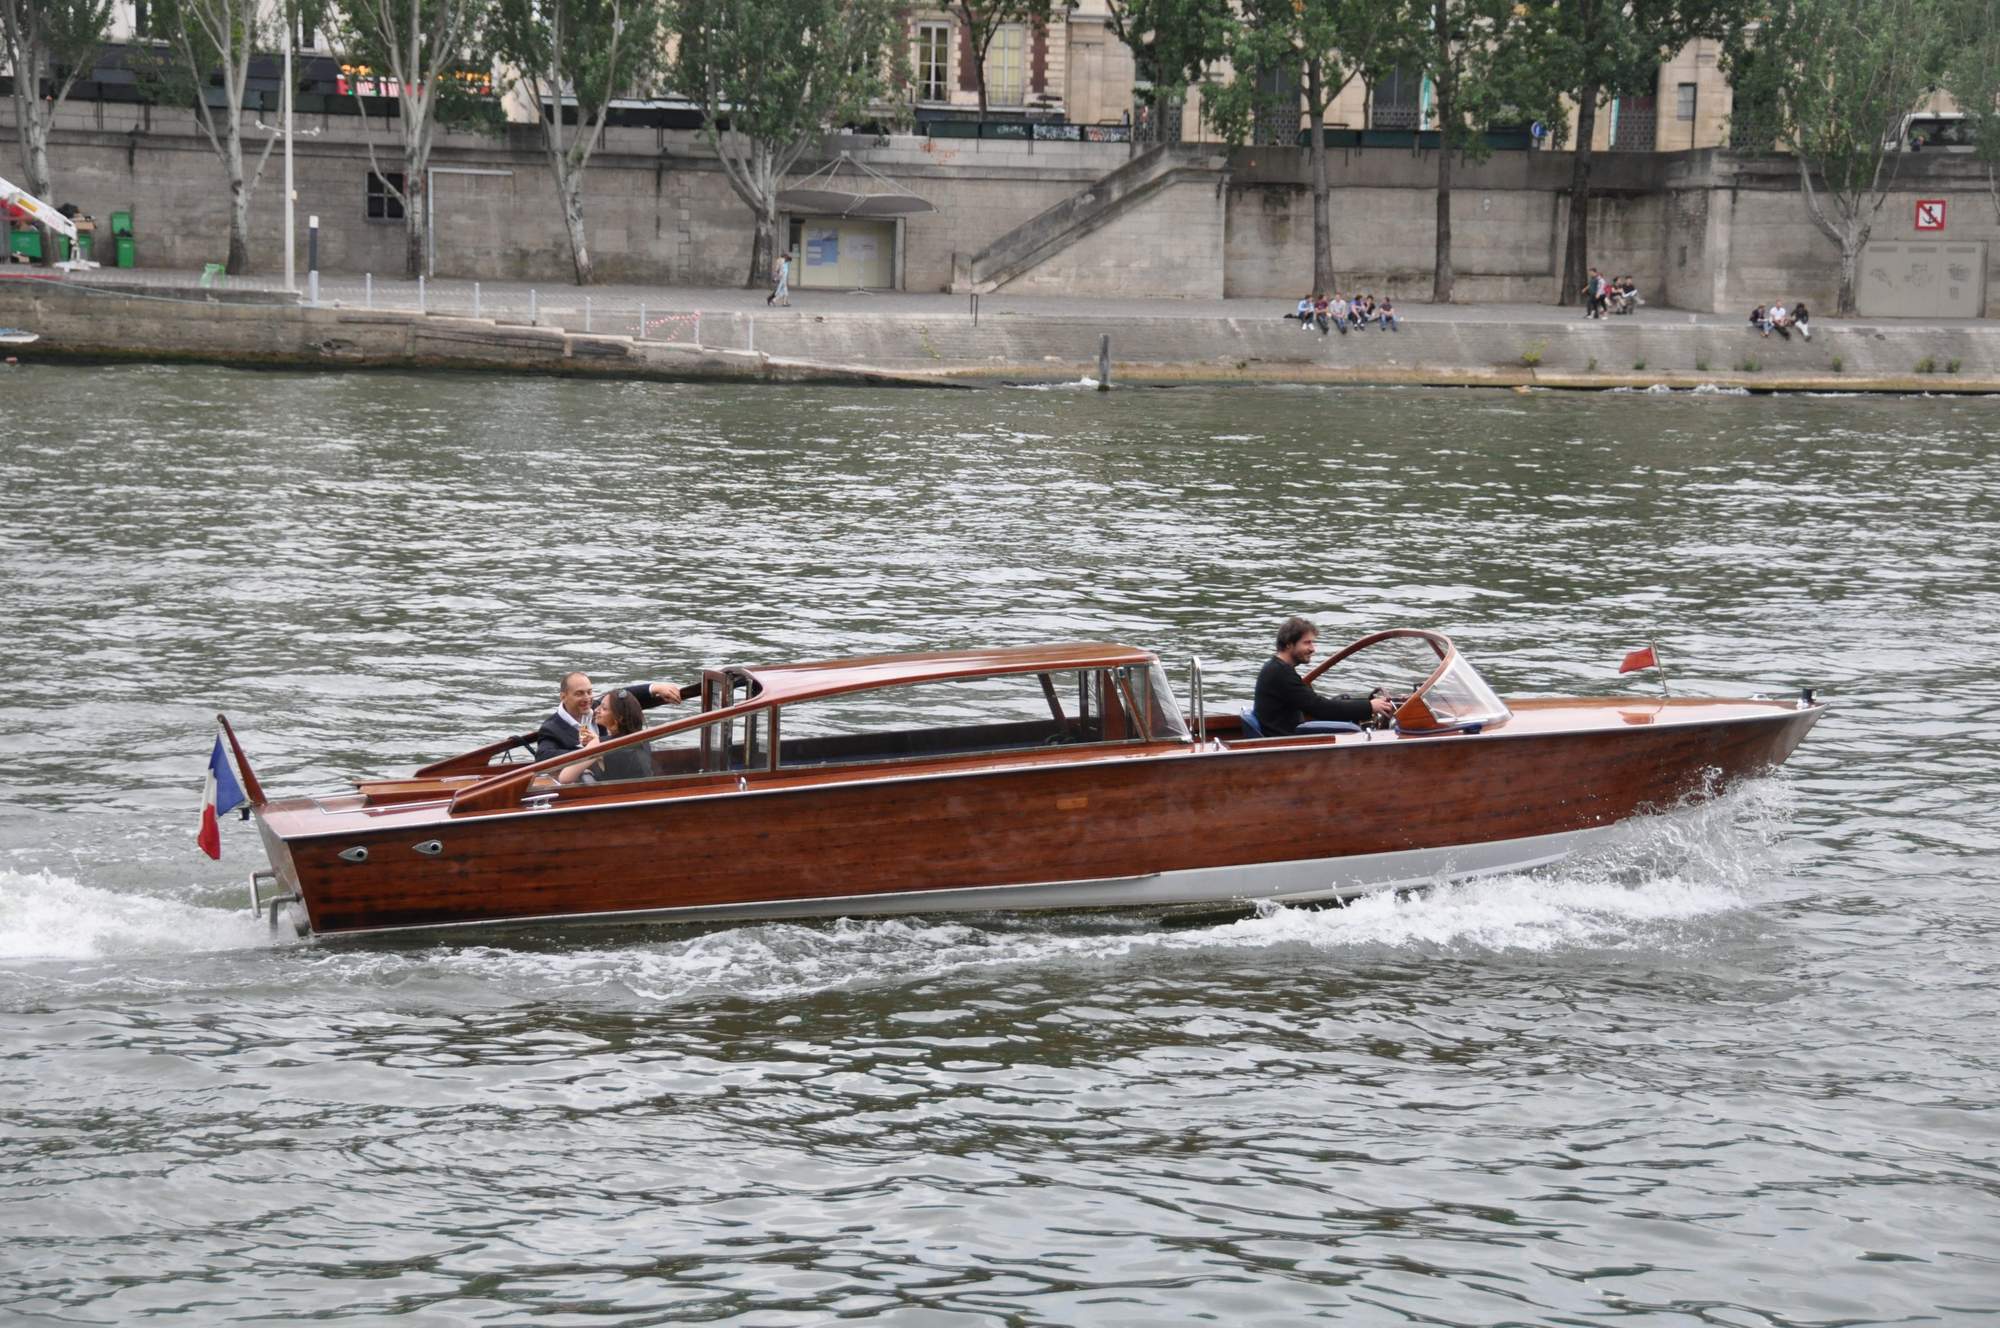 Motoscafo, un bateau de collection sur la Seine - Paris